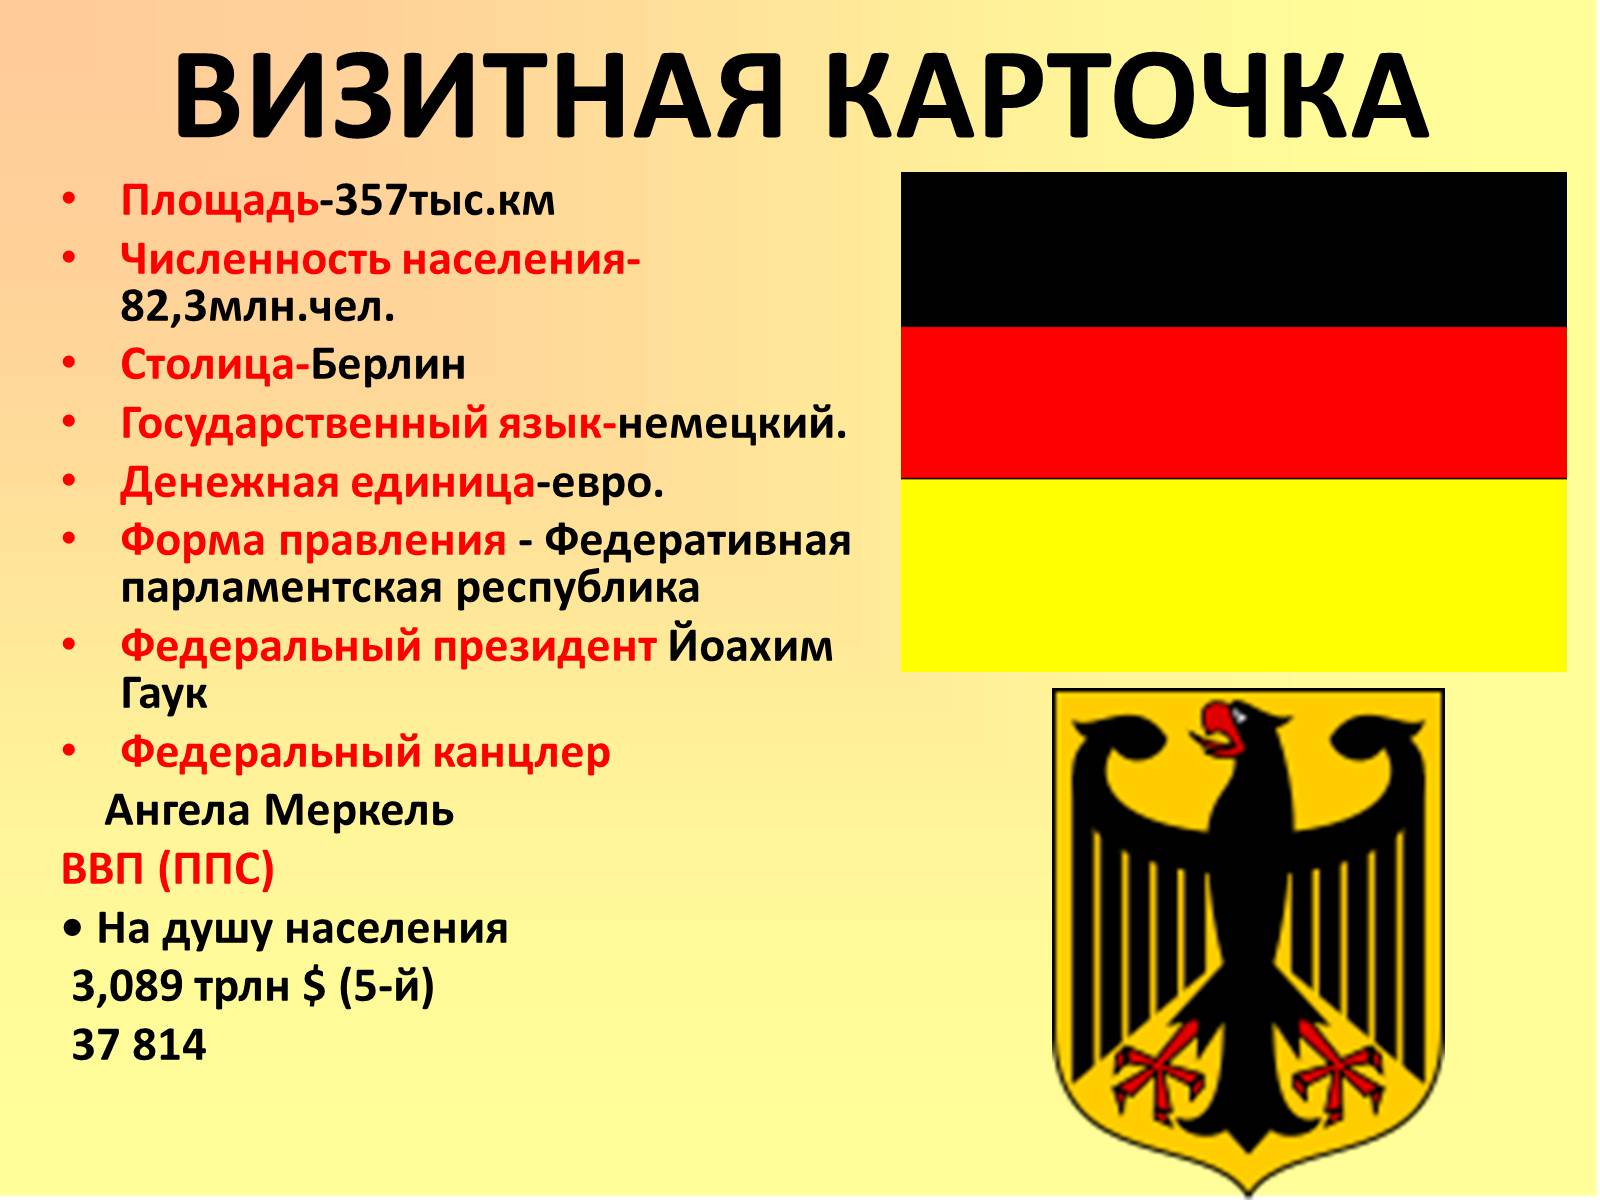 Игры на тему германия. Столица Федеративной Республики Германия. Визитная карточка Германии. Германия столица форма правления. Германия визитная карточка страны.